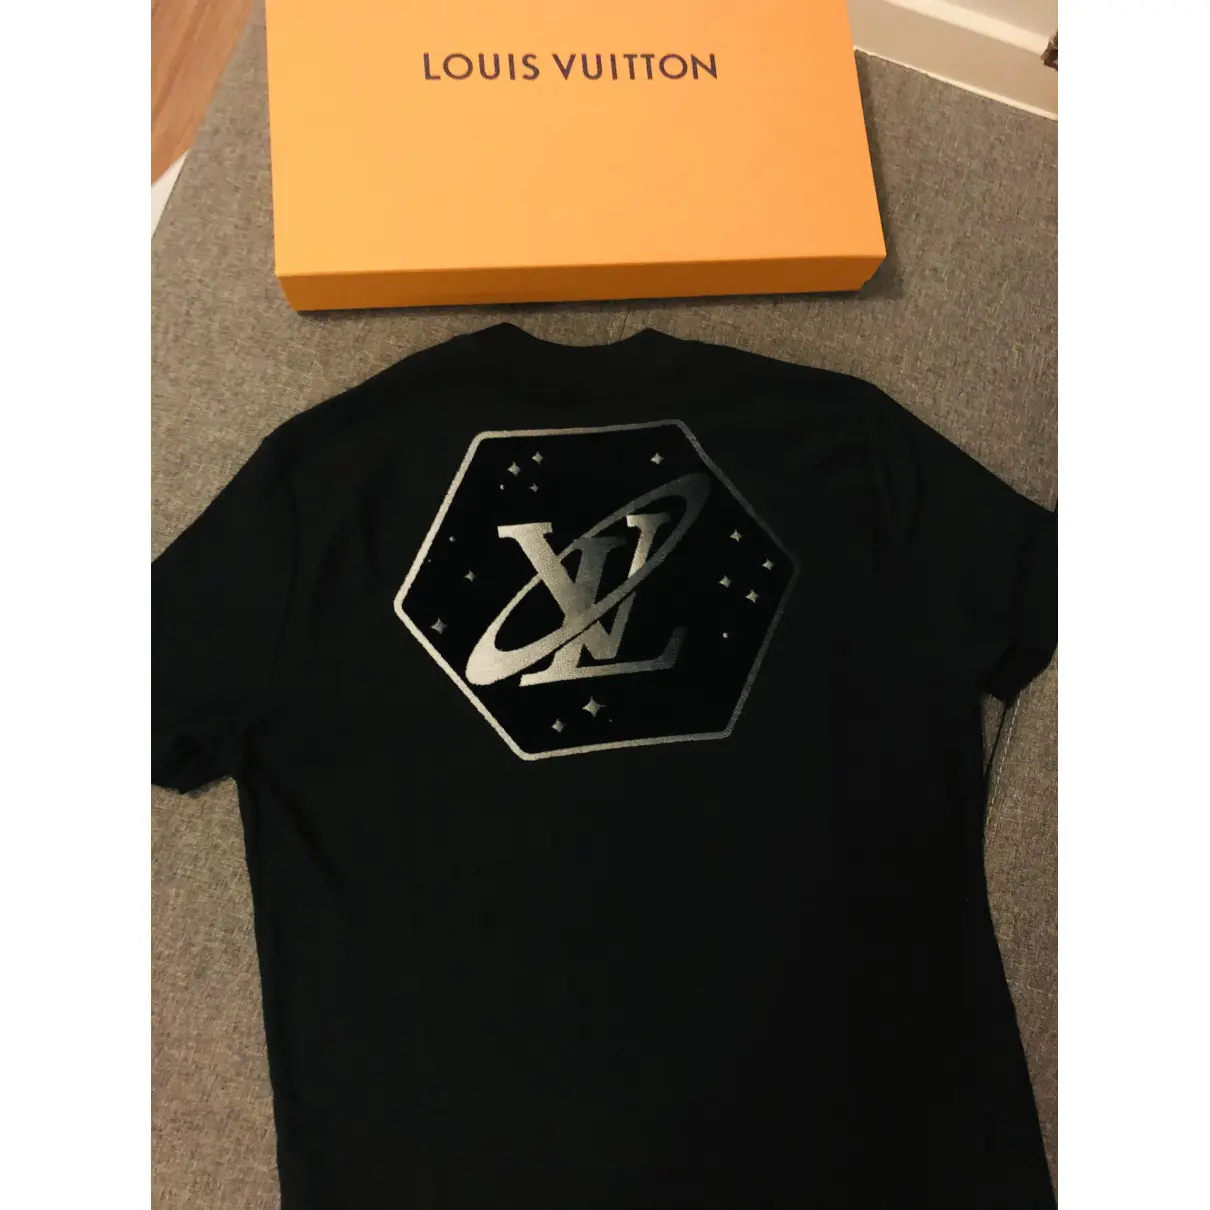 Buy Louis Vuitton Black Cotton T-shirt online